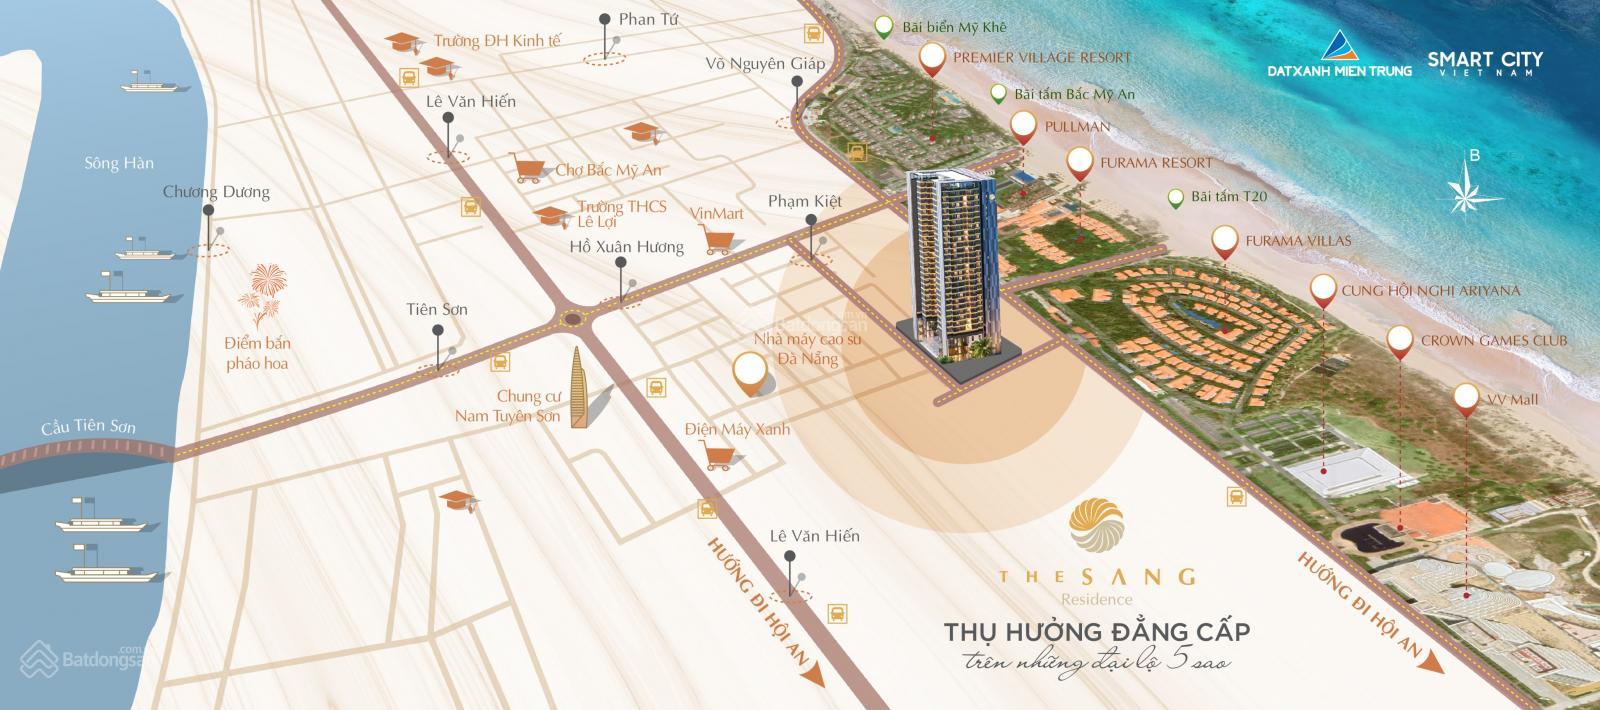 Sở hữu lâu dài căn hộ biển Đà Nẵng, tỷ suất sinh lời 80%/2 năm, 3 suất ngoại giao nhận quà 300tr